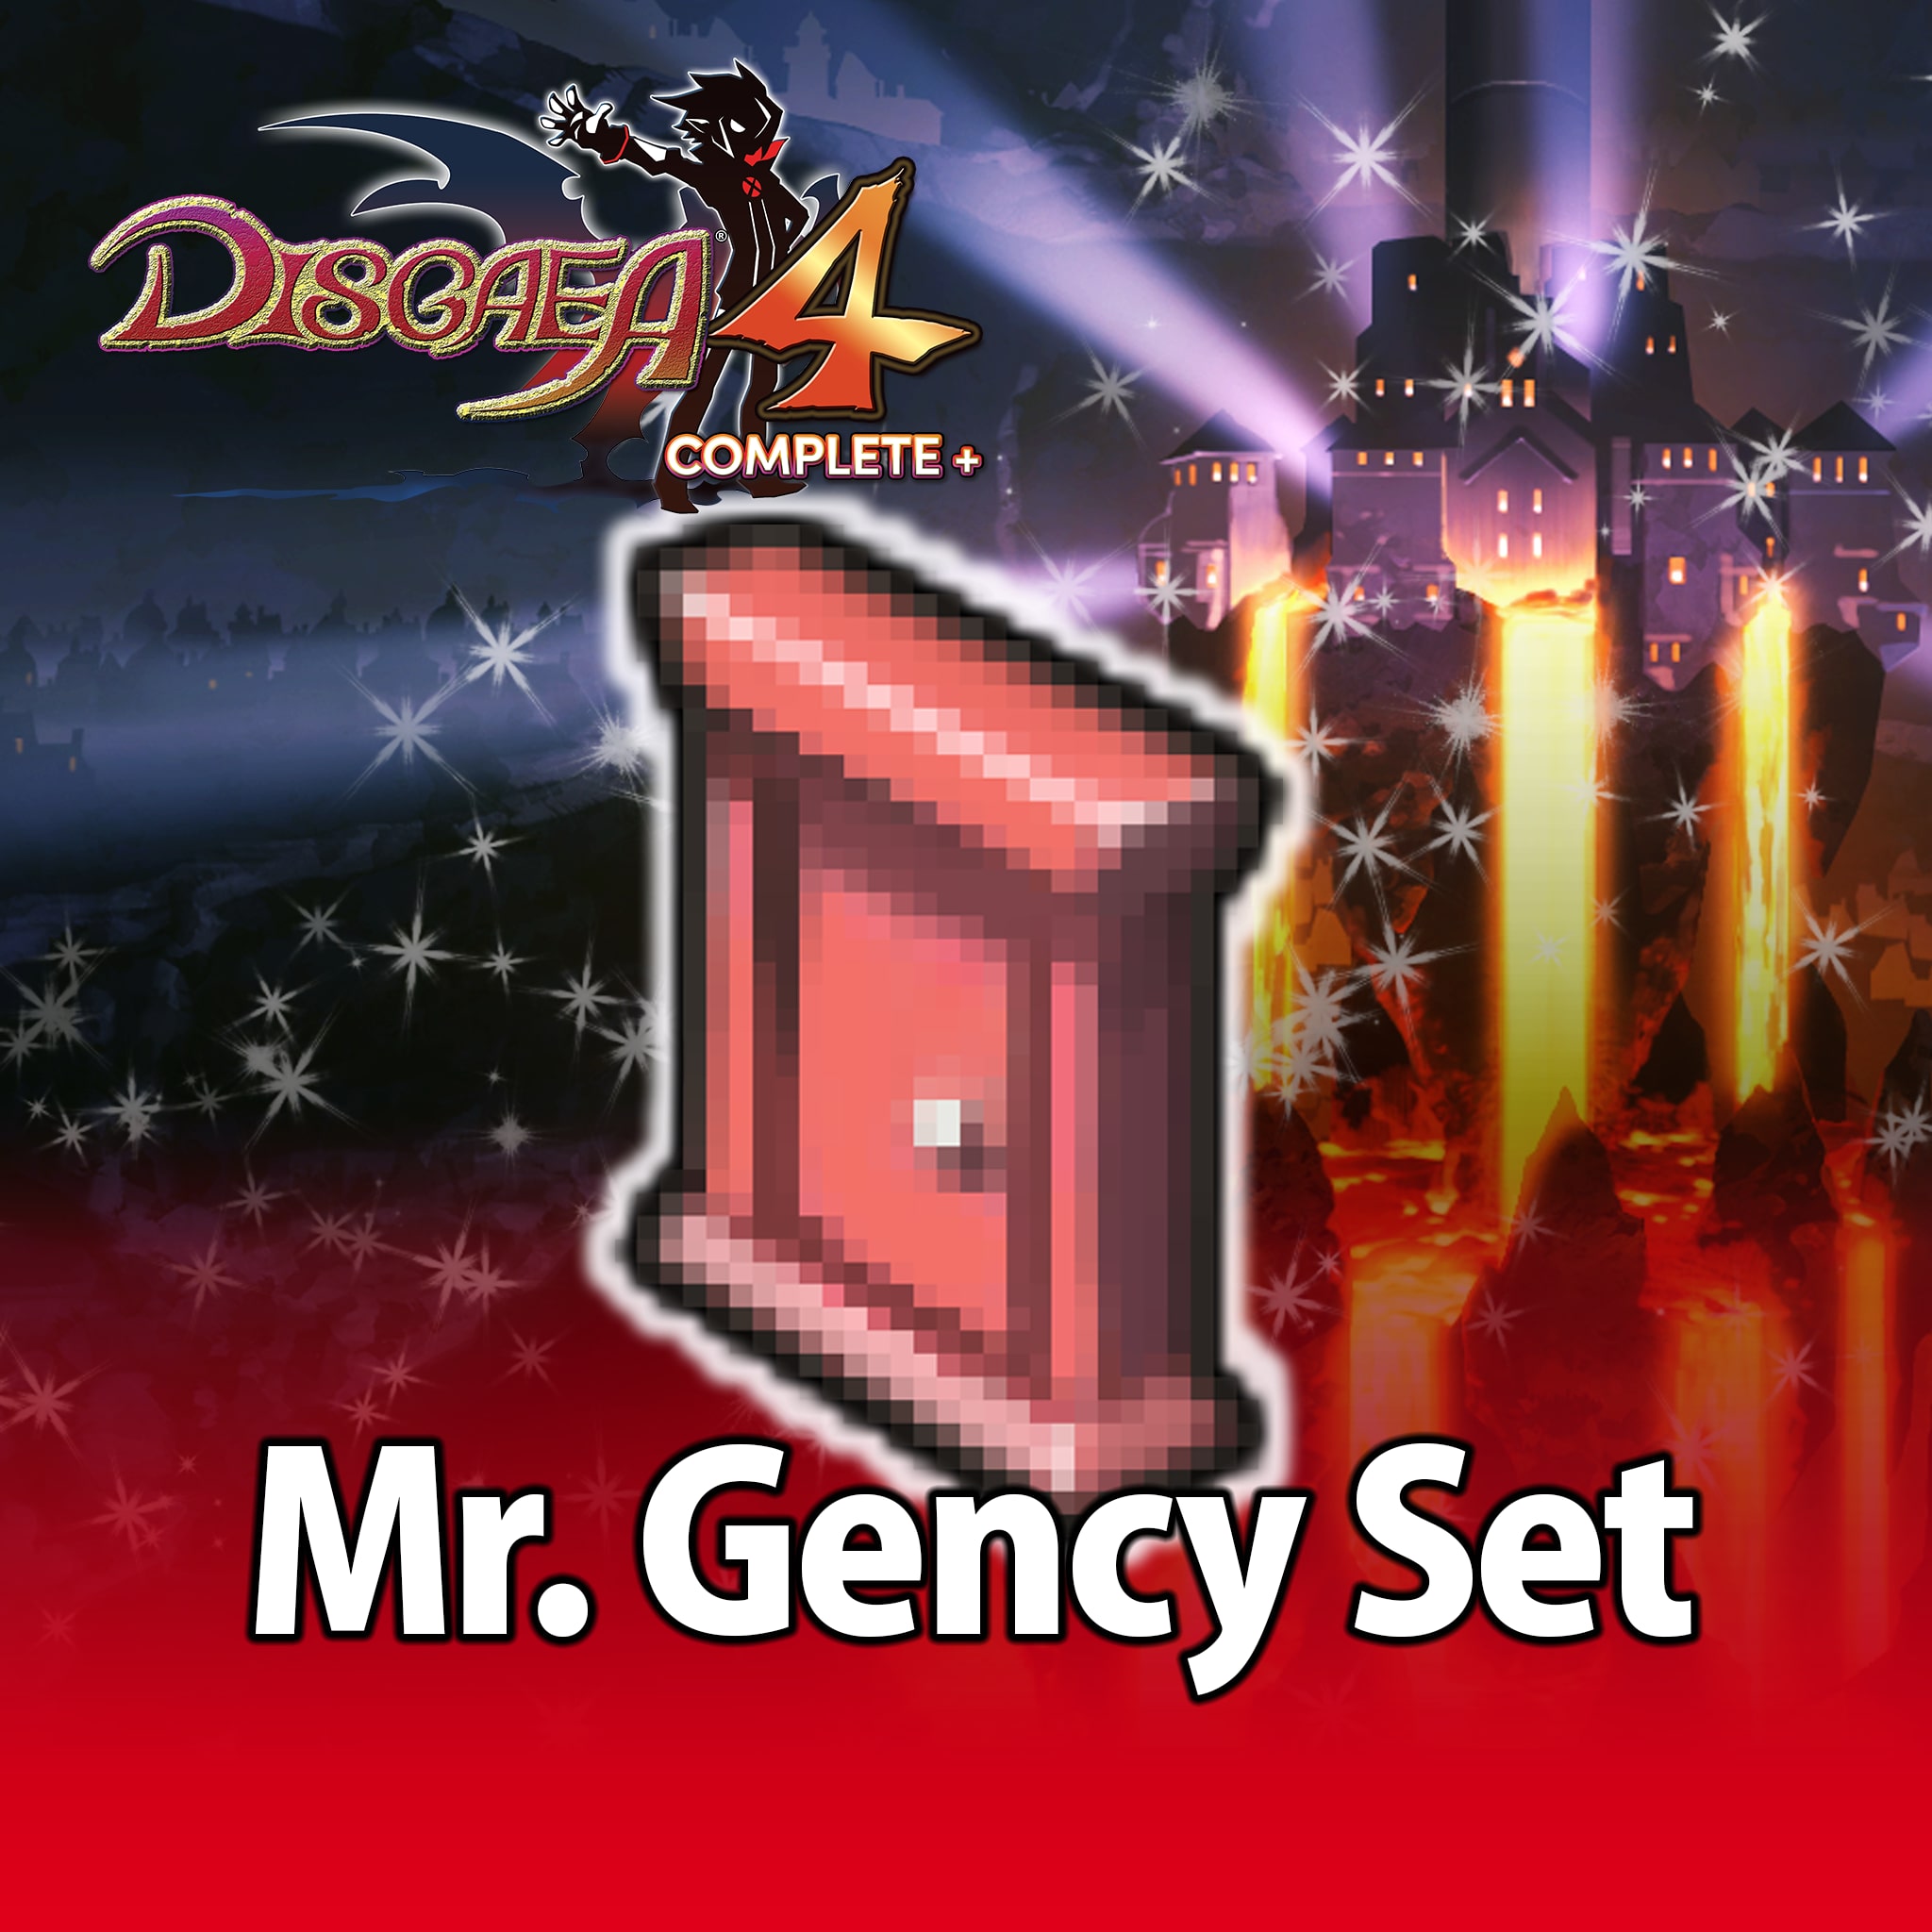 Disgaea 4 Complete+ Mr. Gency Set